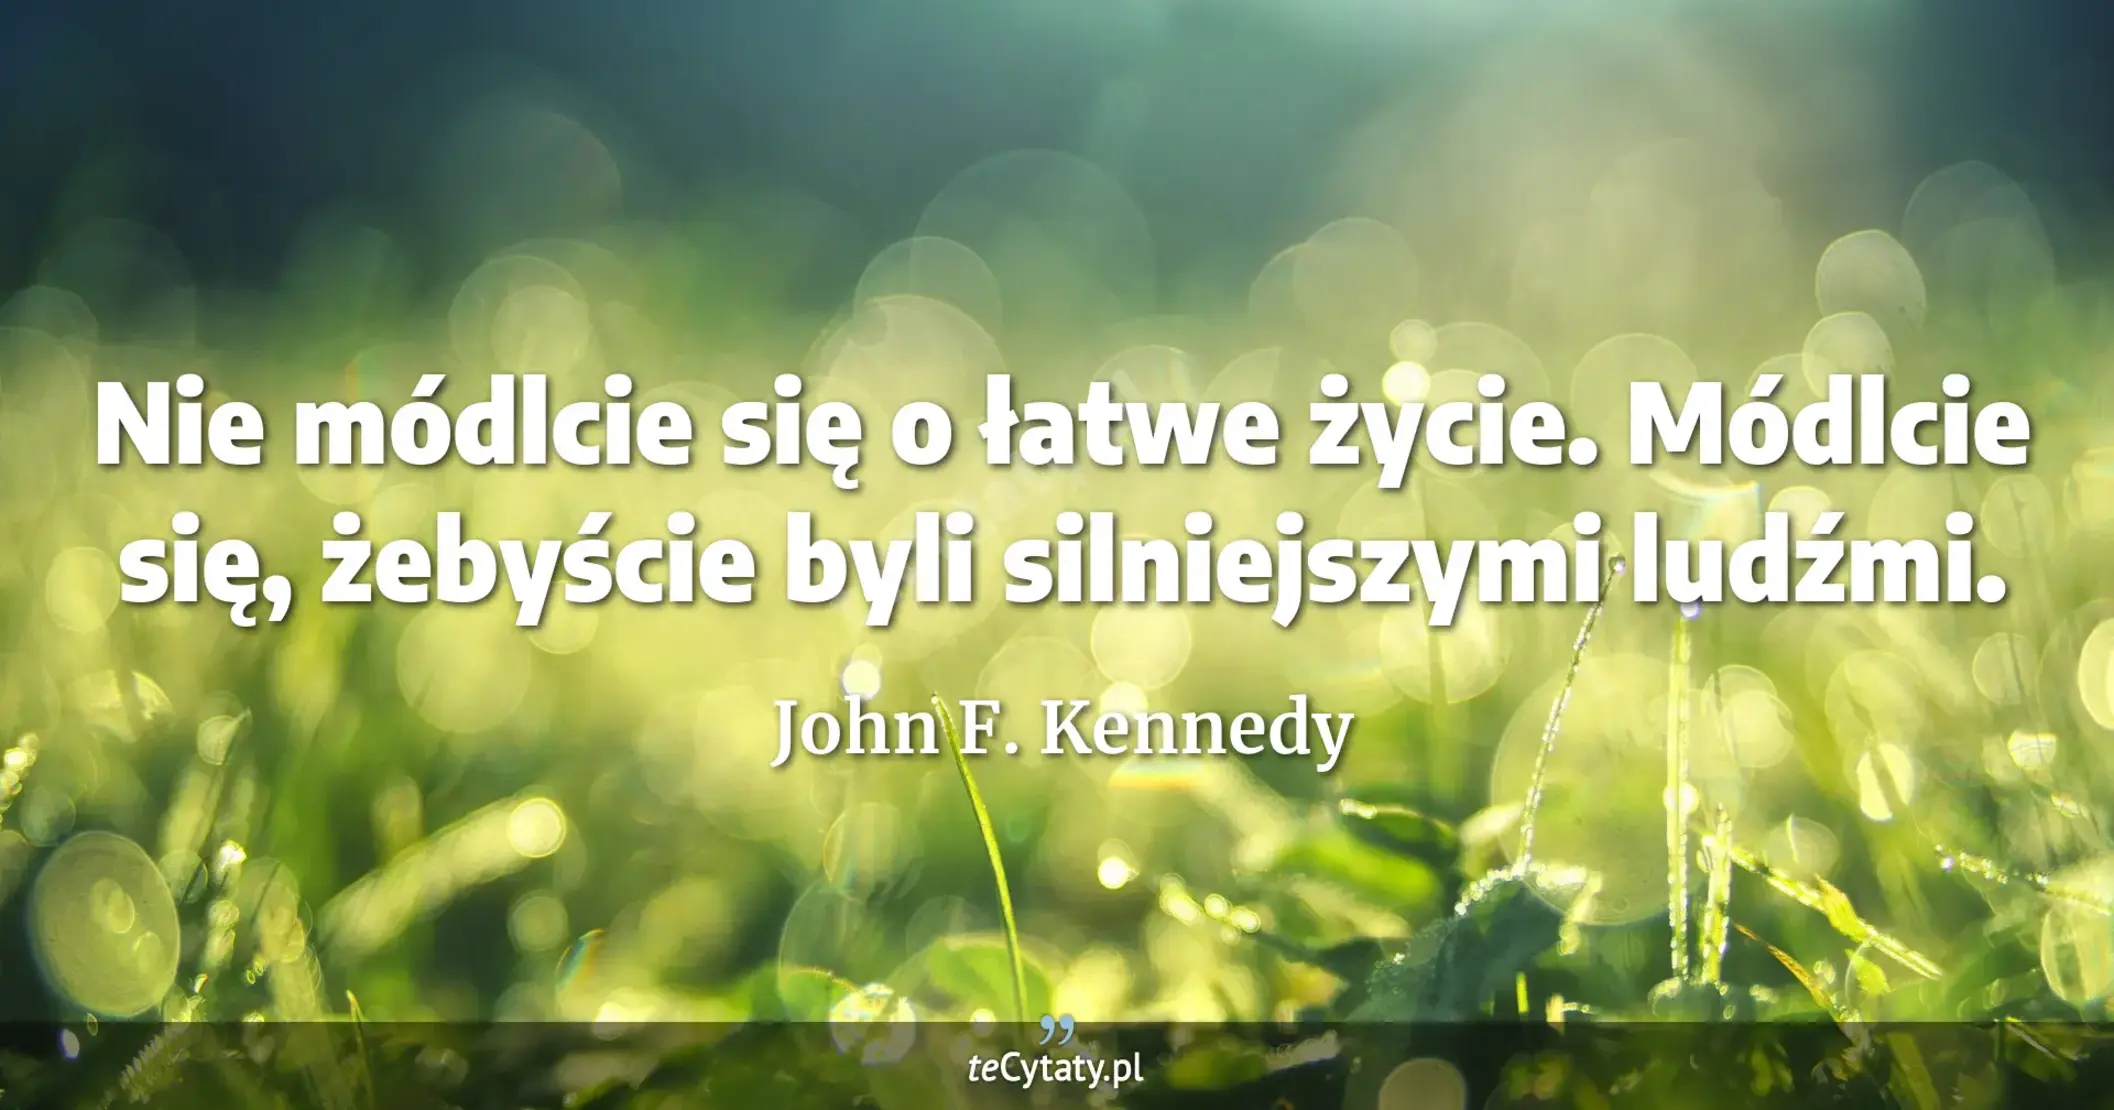 Nie módlcie się o łatwe życie. Módlcie się, żebyście byli silniejszymi ludźmi. - John F. Kennedy